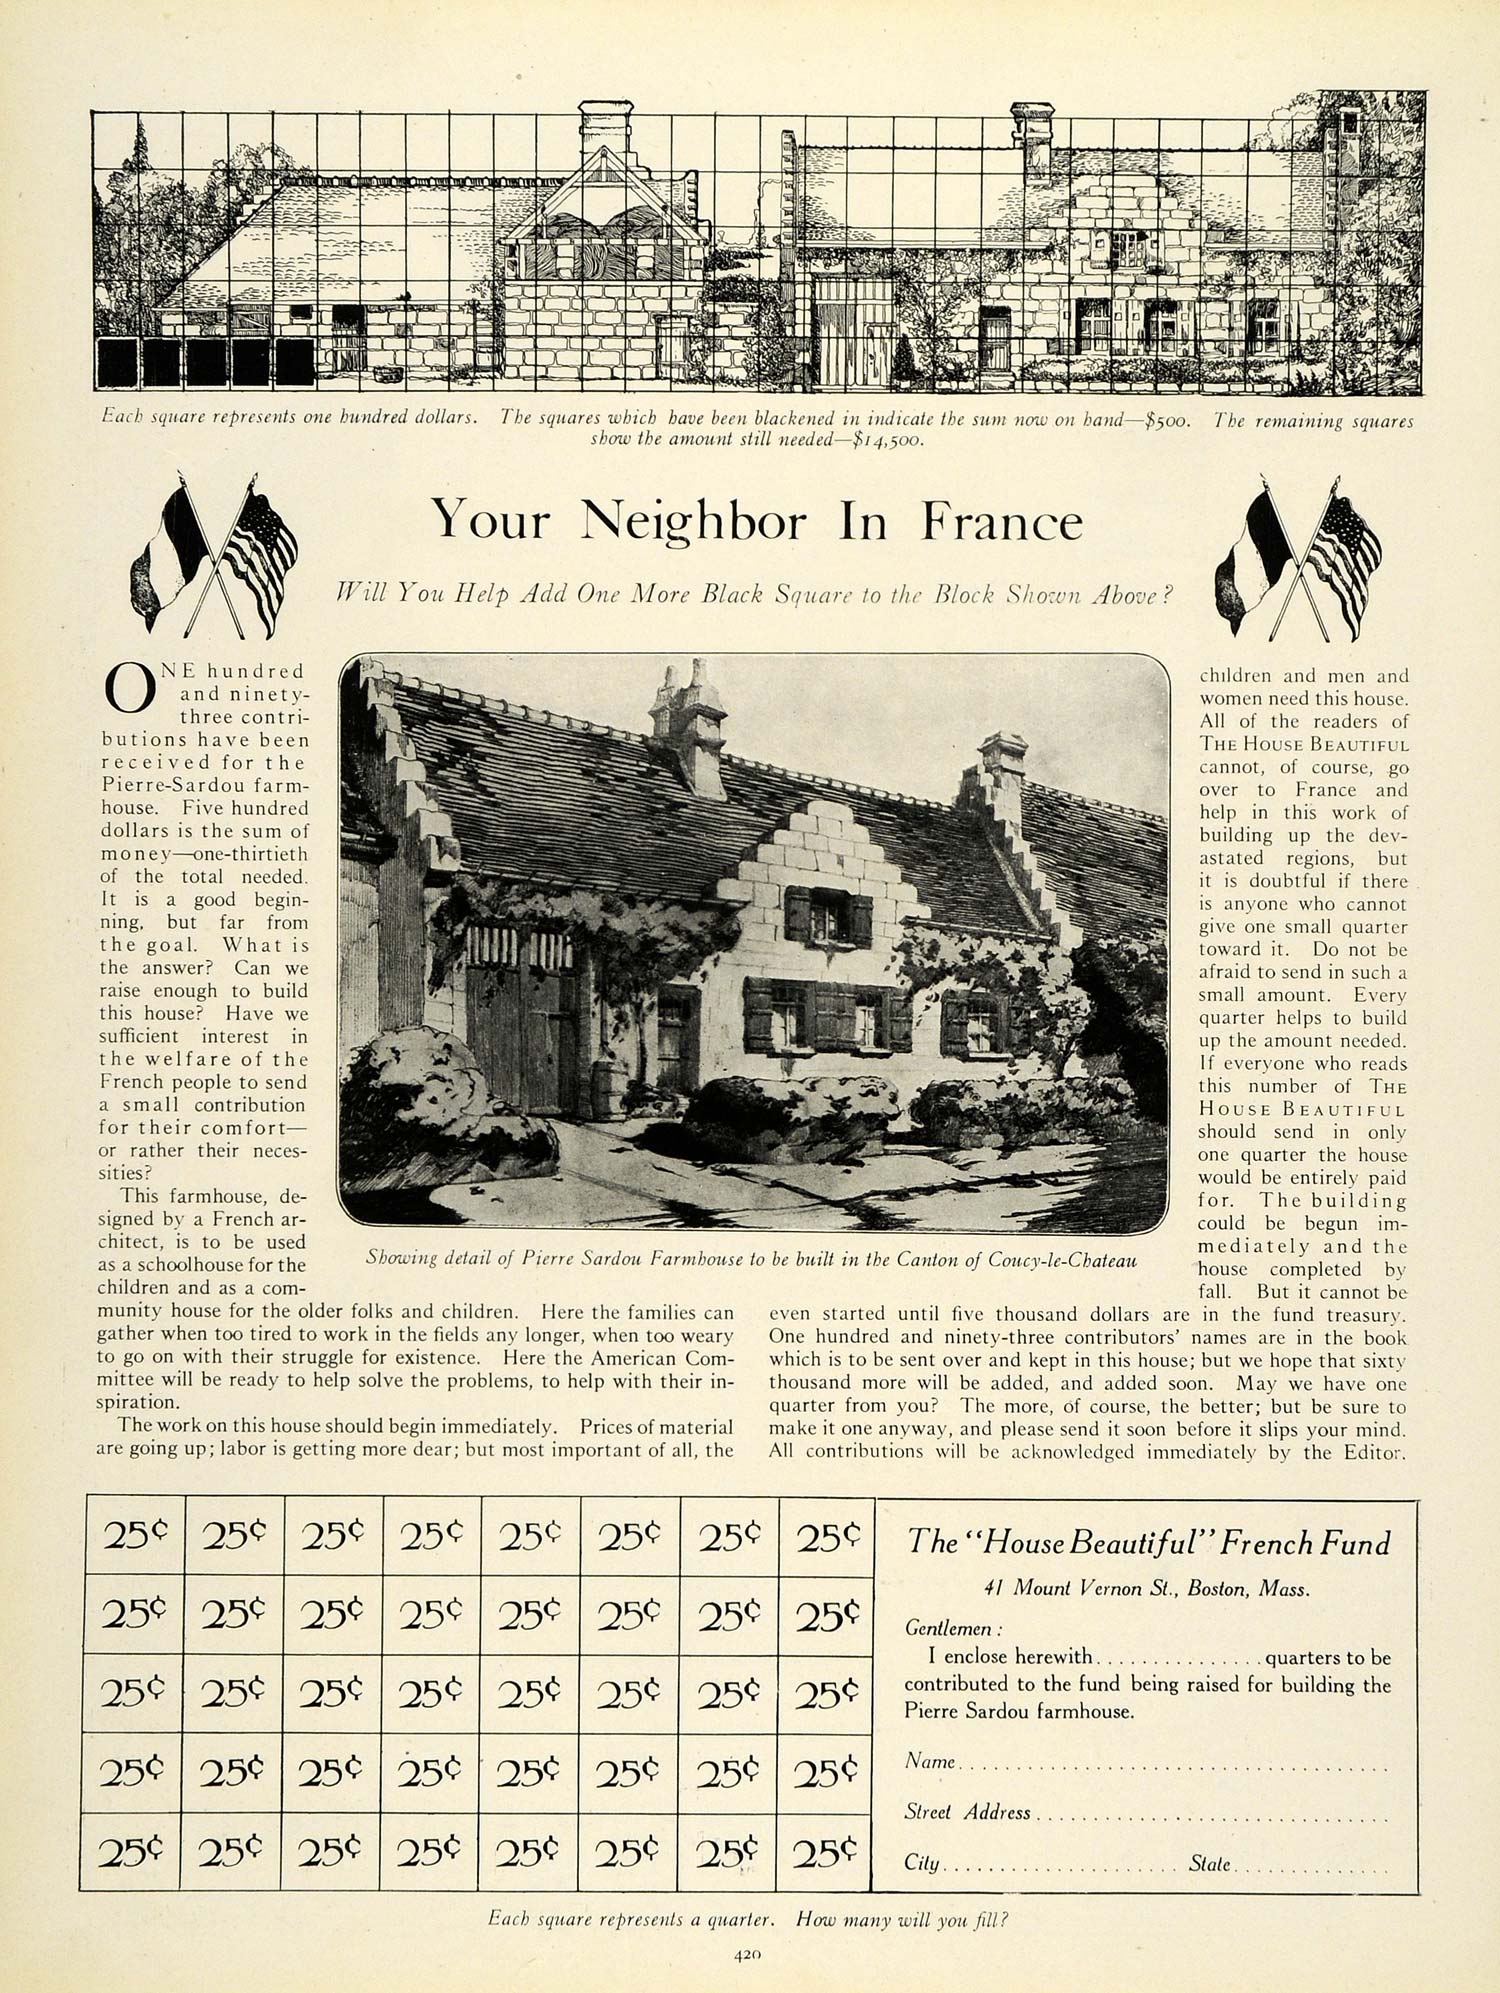 1920 Ad Pierre Sardou Farmhouse Canton Coucy-le-Chateau House Beautiful Fund HB2